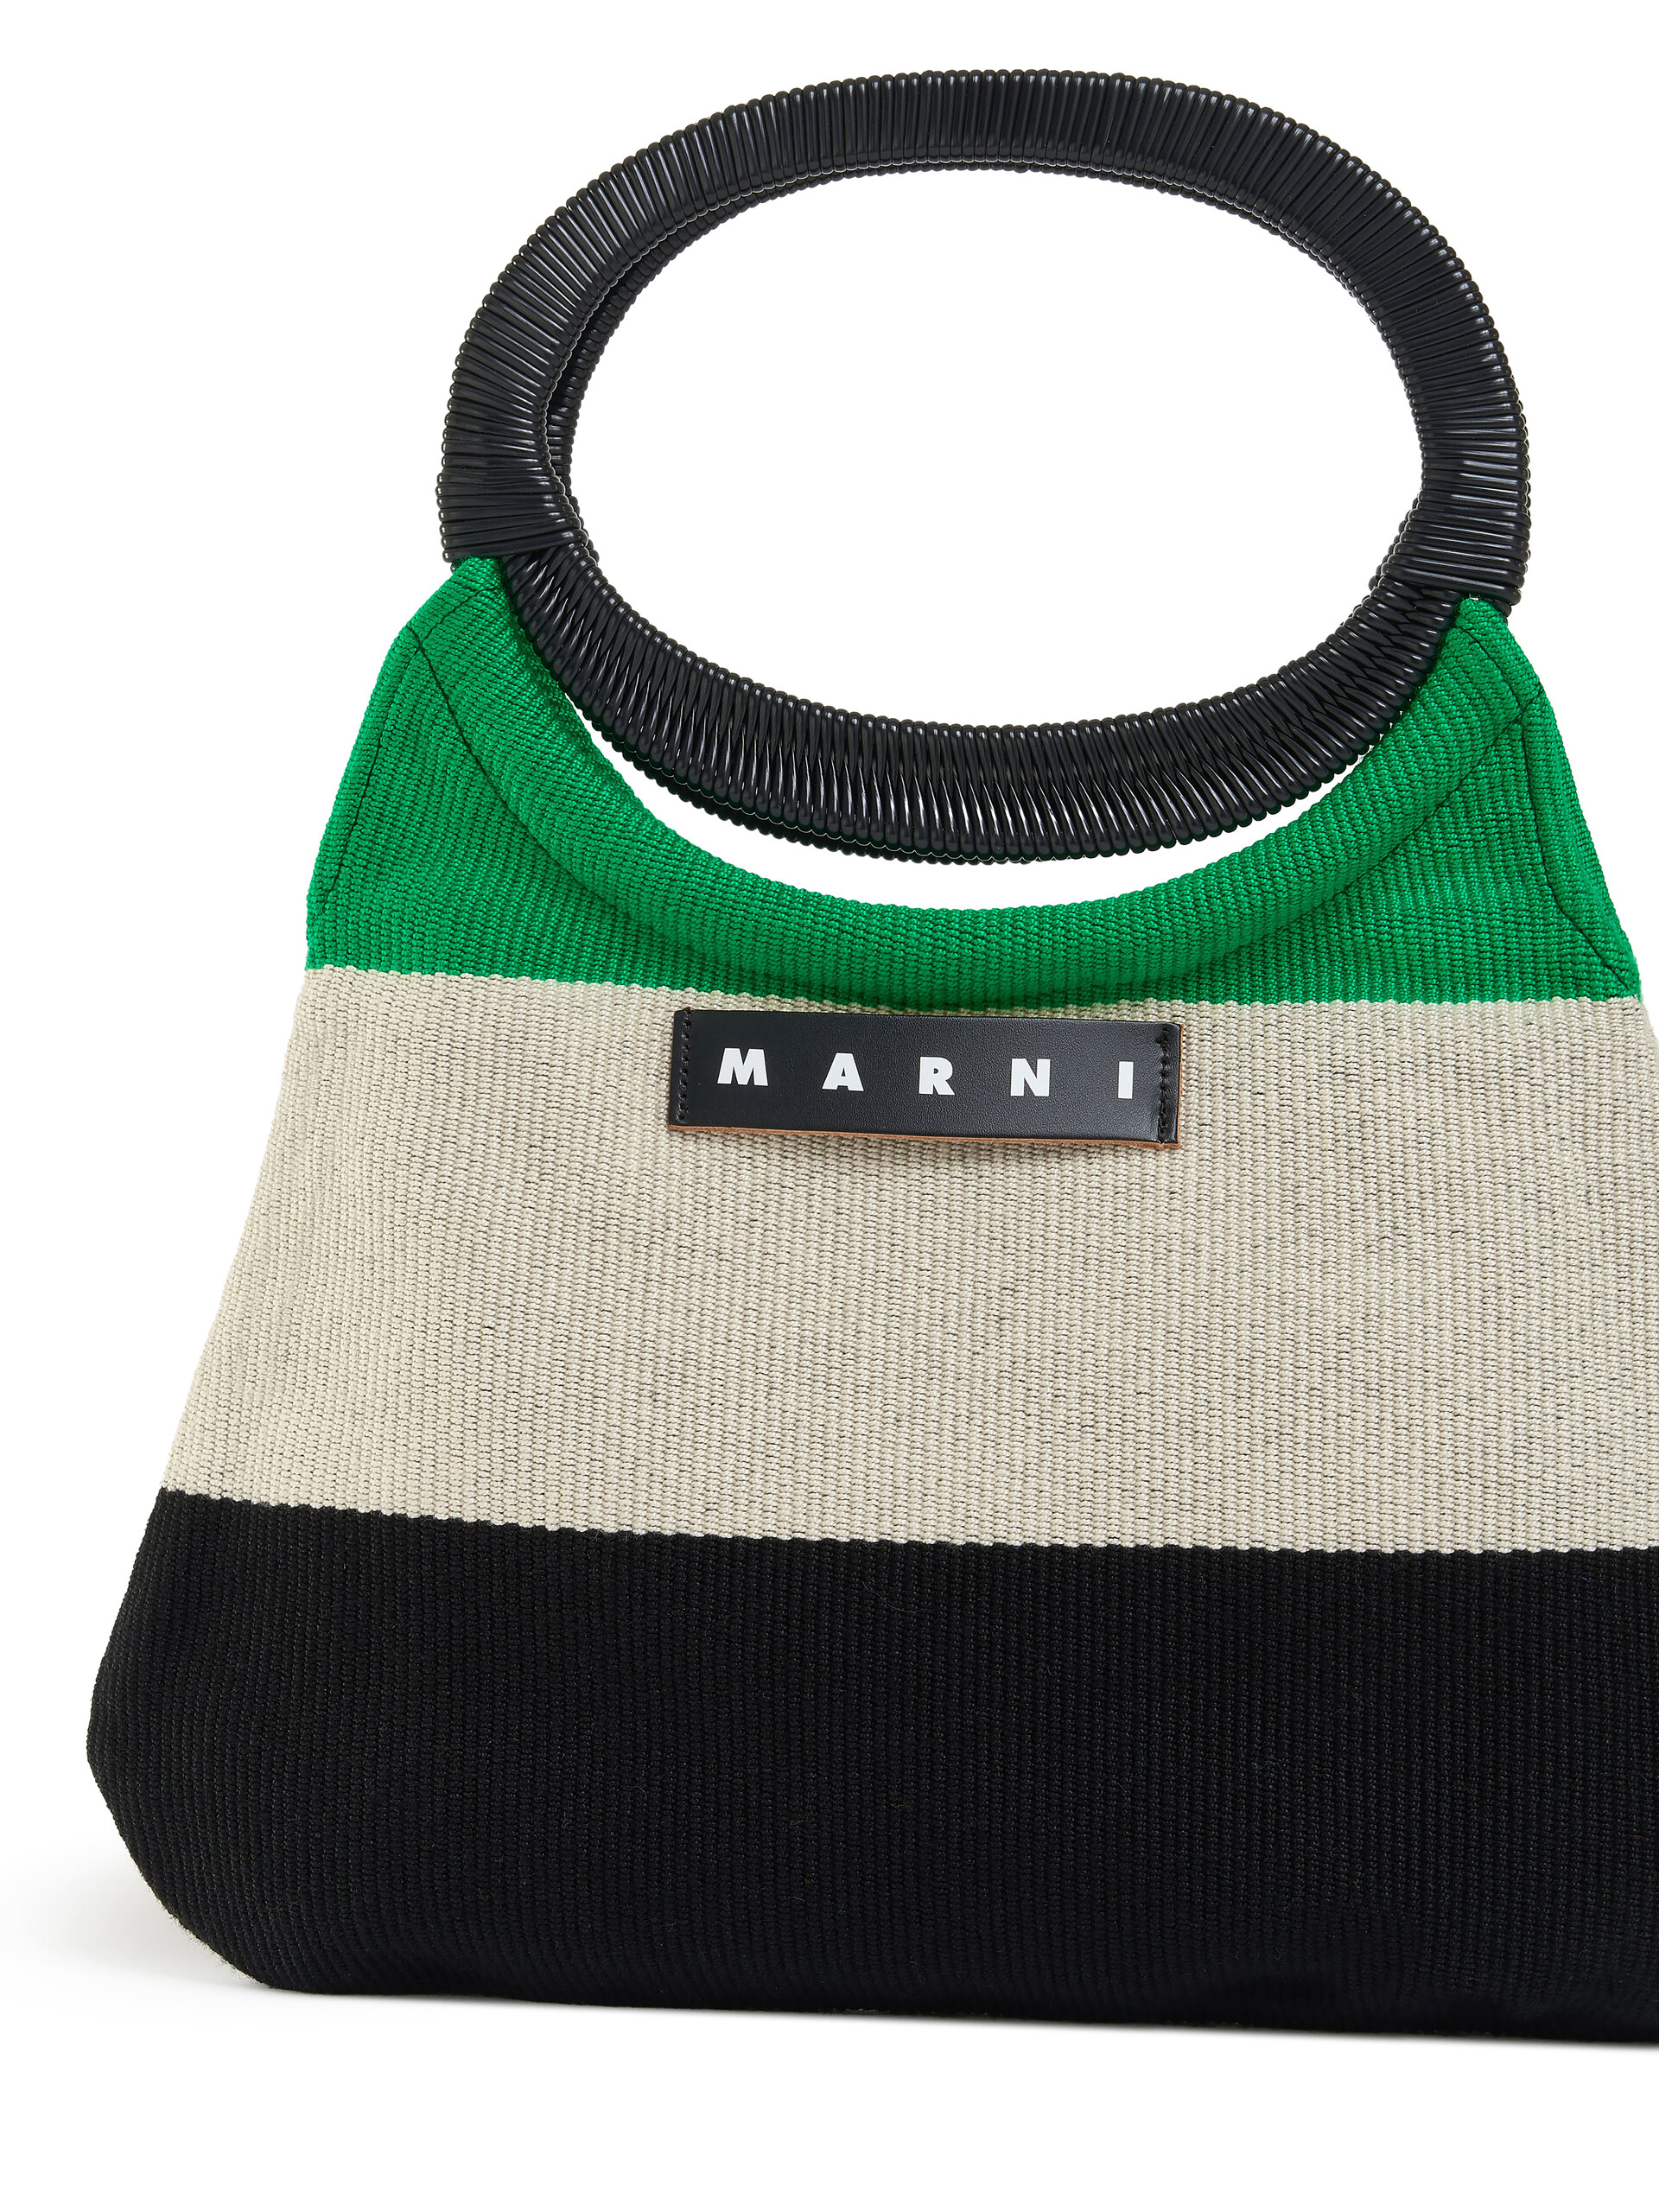 MARNI MARKET bag in multicolor striped cotton - Bags - Image 4